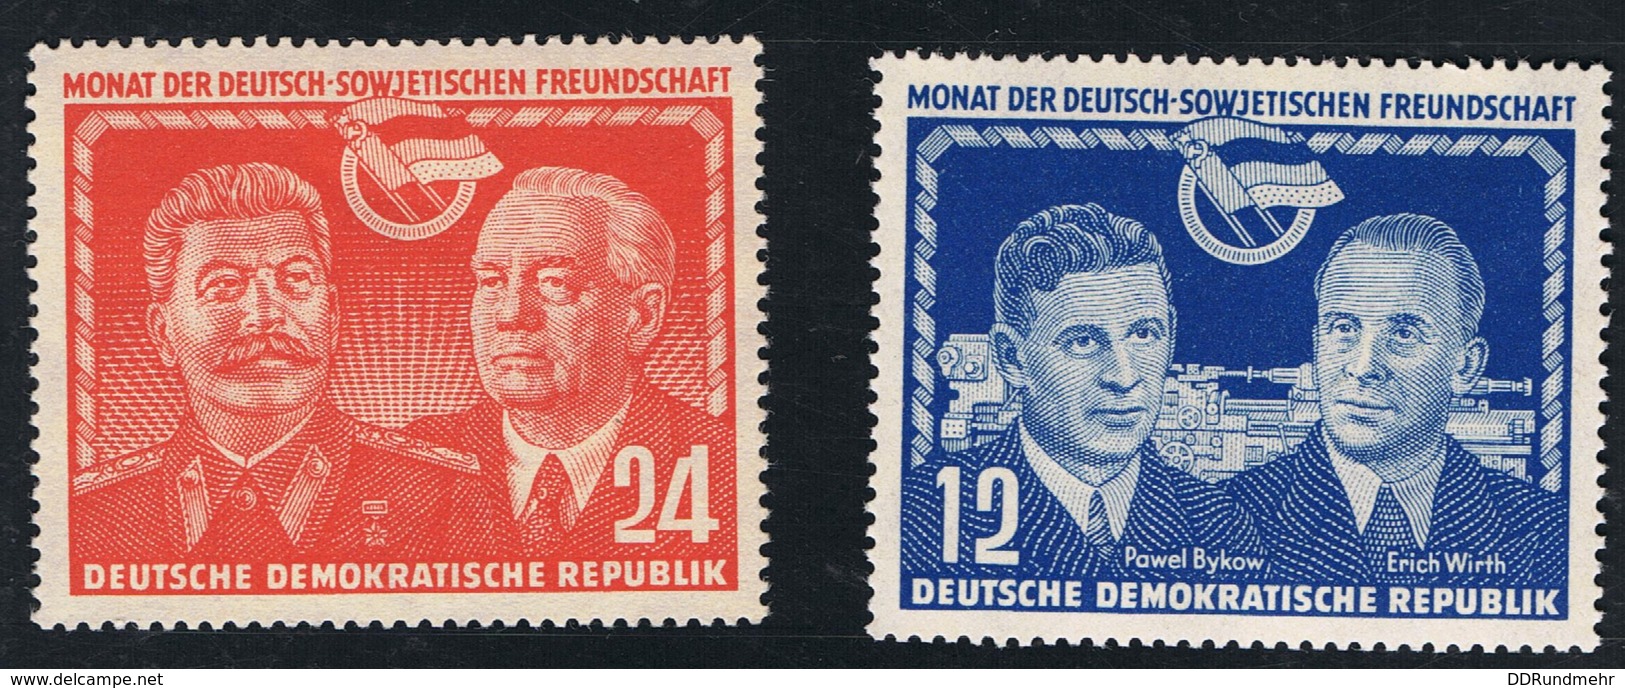 Umangreiches Lot 1949 - 1952 mit Gummierung und Falz mit Michel 286 und 287 siehe Scan